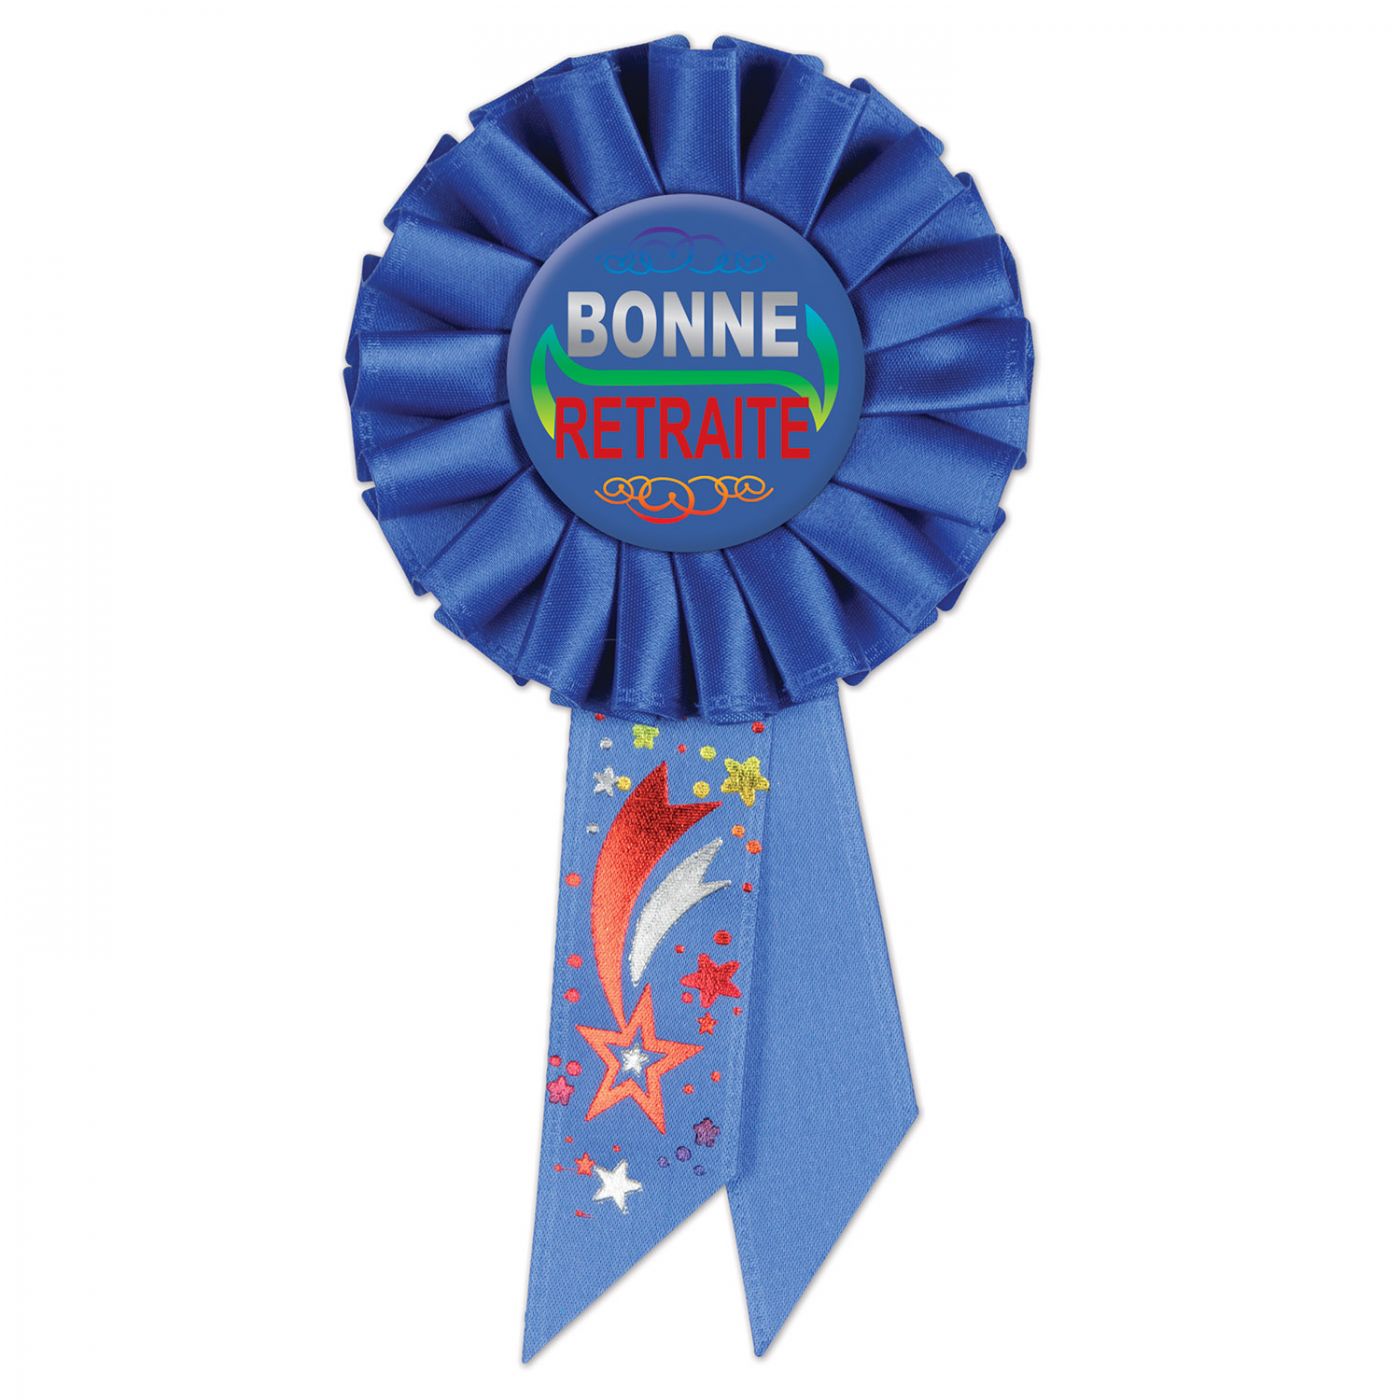 Image of Bonne Retraite (Happy Retirement)Rosette (6)